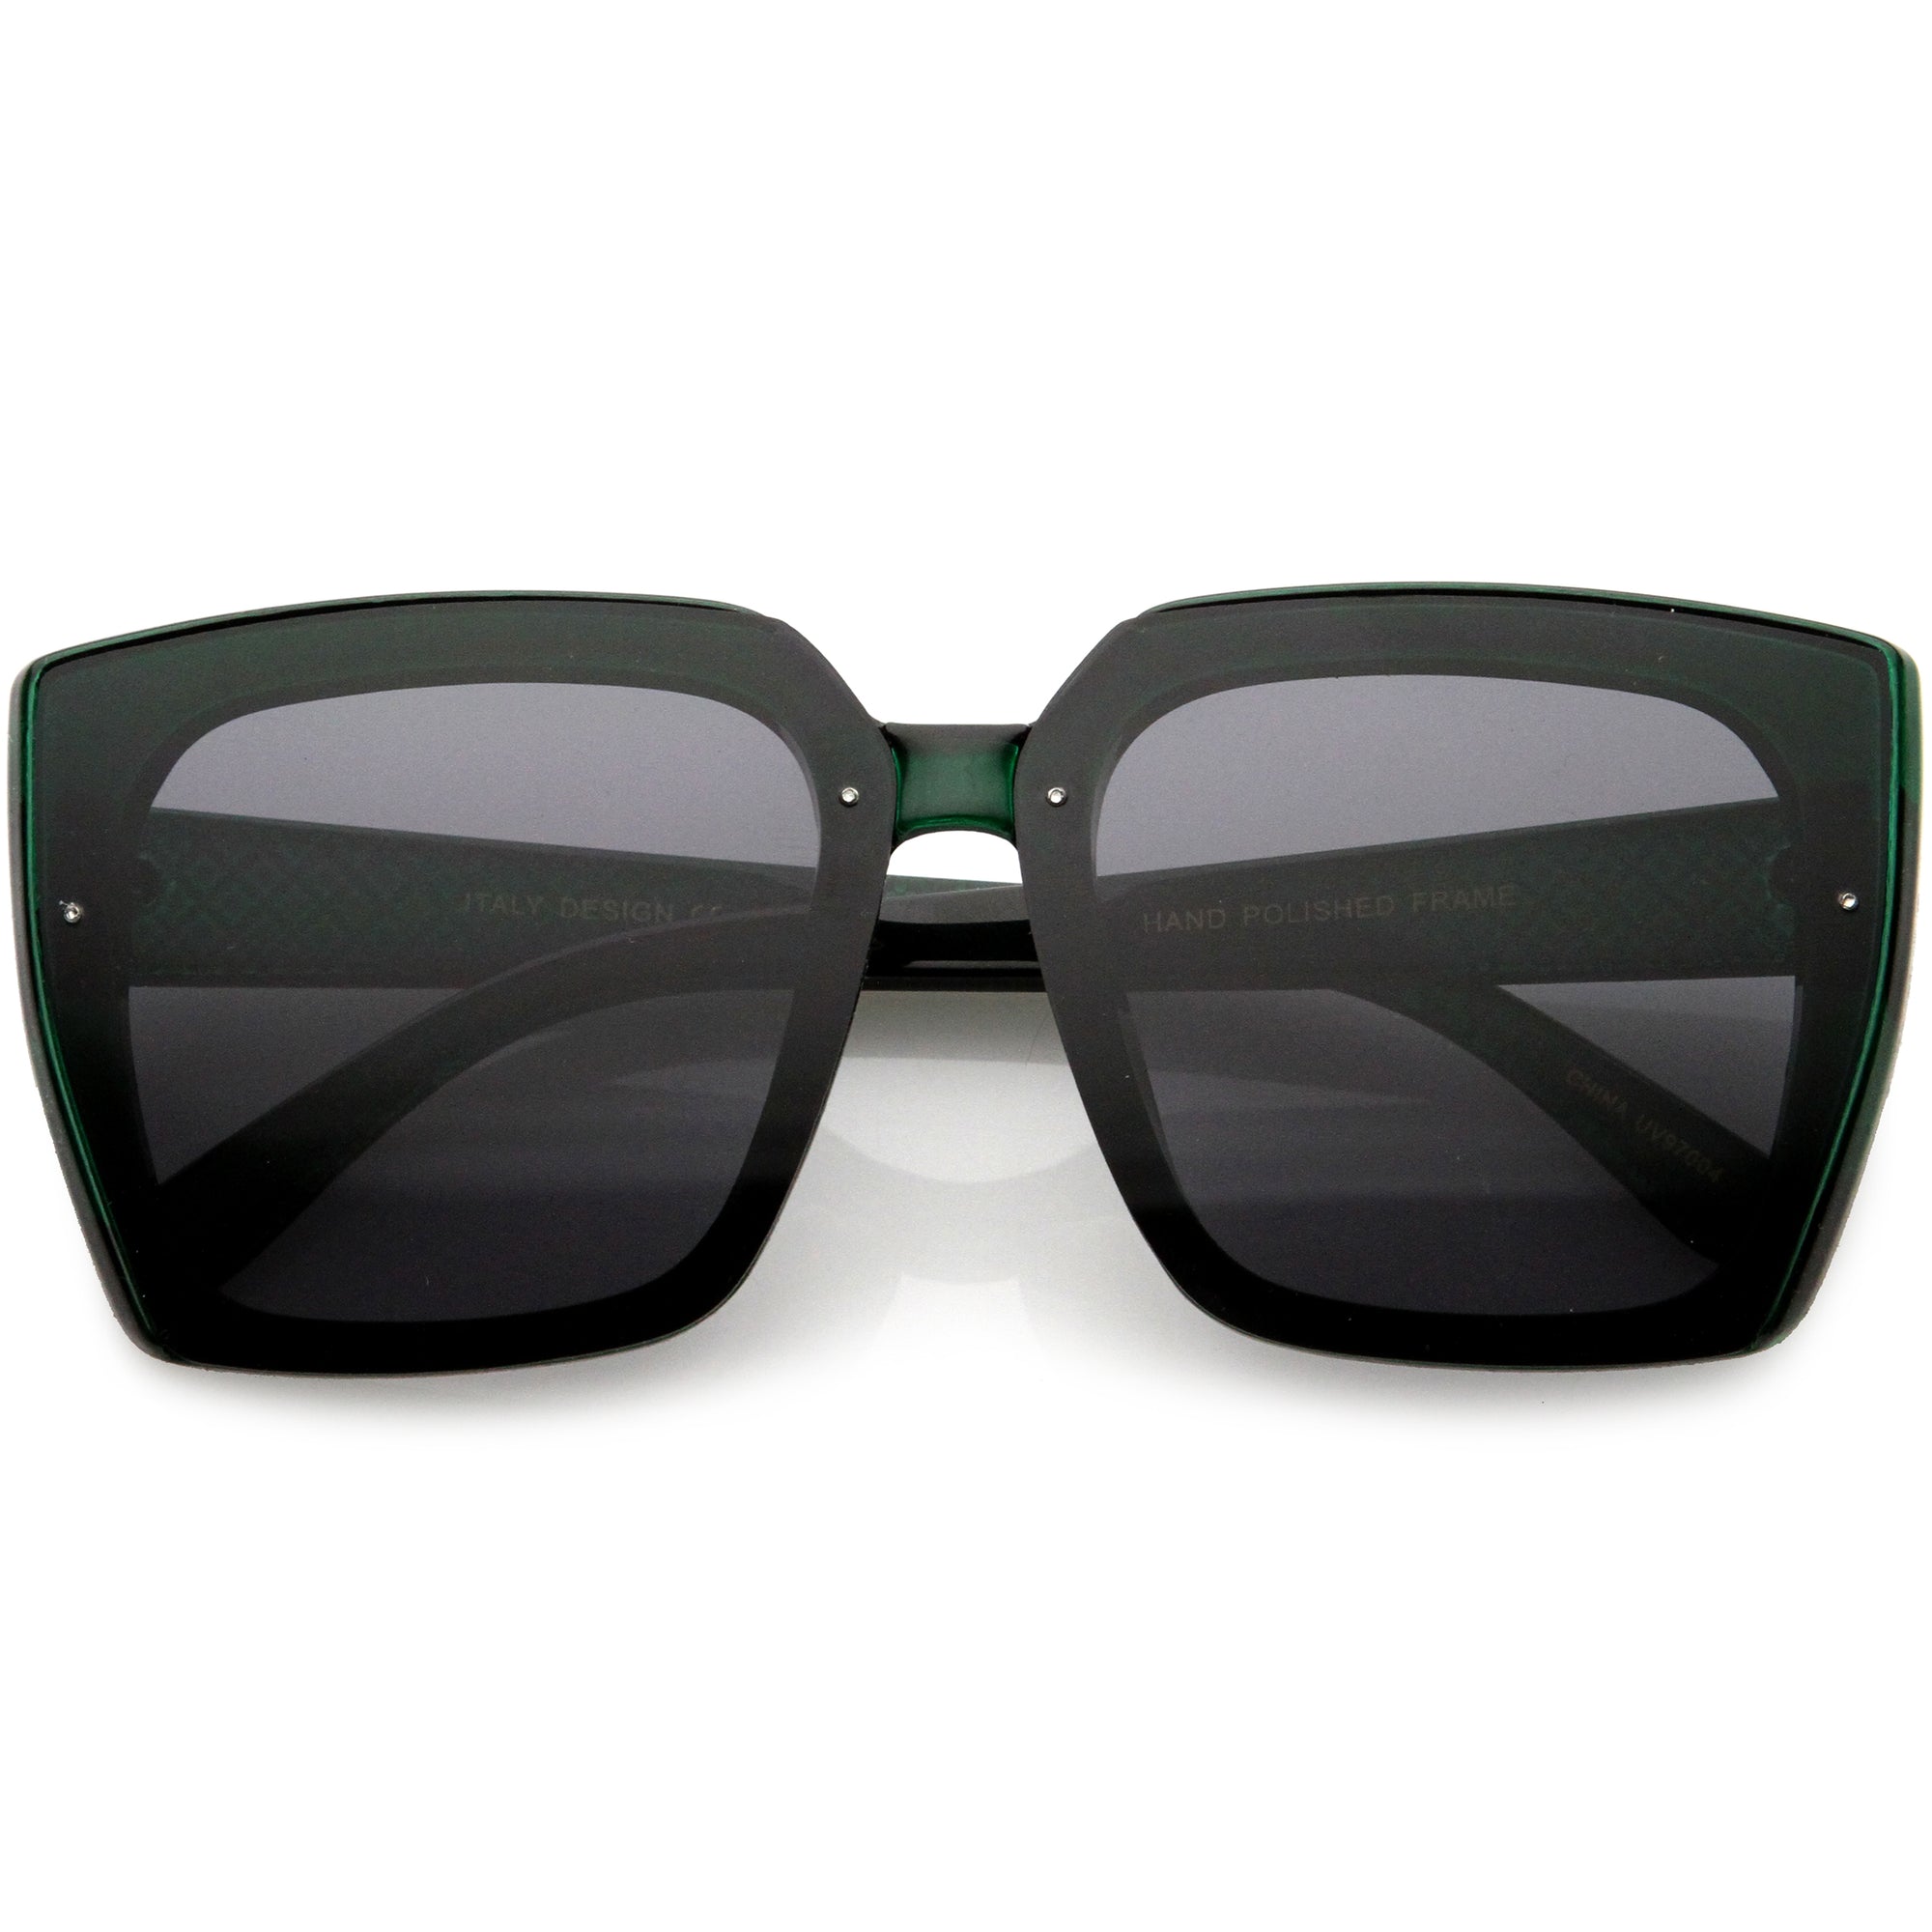 Glamorosas y elegantes gafas de sol cuadradas extragrandes con brazos en relieve Argyle inspiradas en el diseñador D035